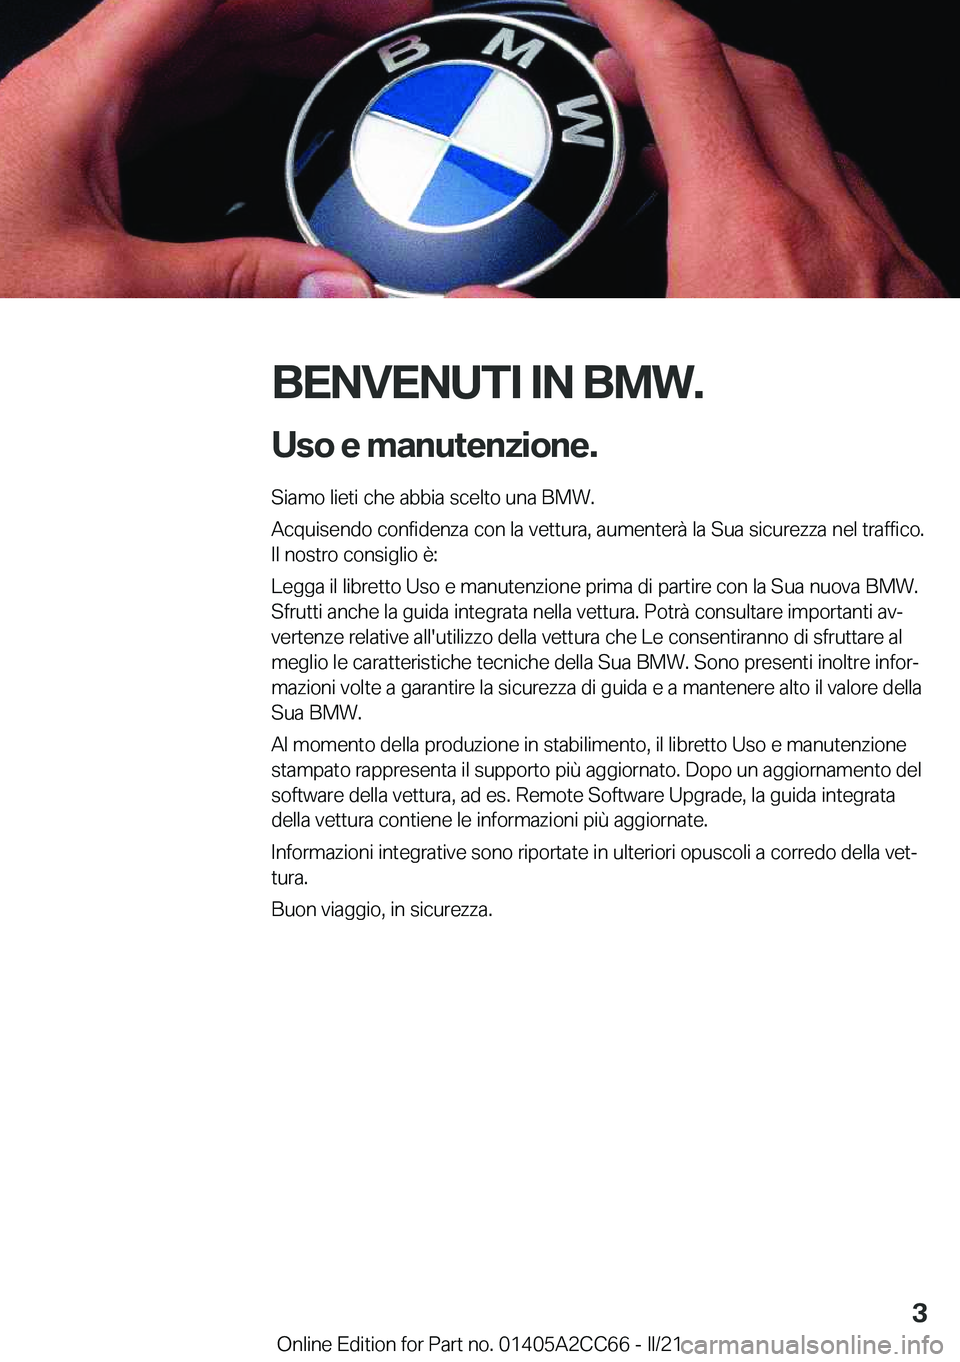 BMW 8 SERIES GRAN COUPE 2022  Libretti Di Uso E manutenzione (in Italian) �B�E�N�V�E�N�U�T�I��I�N��B�M�W�.�U�s�o��e��m�a�n�u�t�e�n�z�i�o�n�e�.
�S�i�a�m�o��l�i�e�t�i��c�h�e��a�b�b�i�a��s�c�e�l�t�o��u�n�a��B�M�W�.
�A�c�q�u�i�s�e�n�d�o��c�o�n�f�i�d�e�n�z�a��c�o�n�